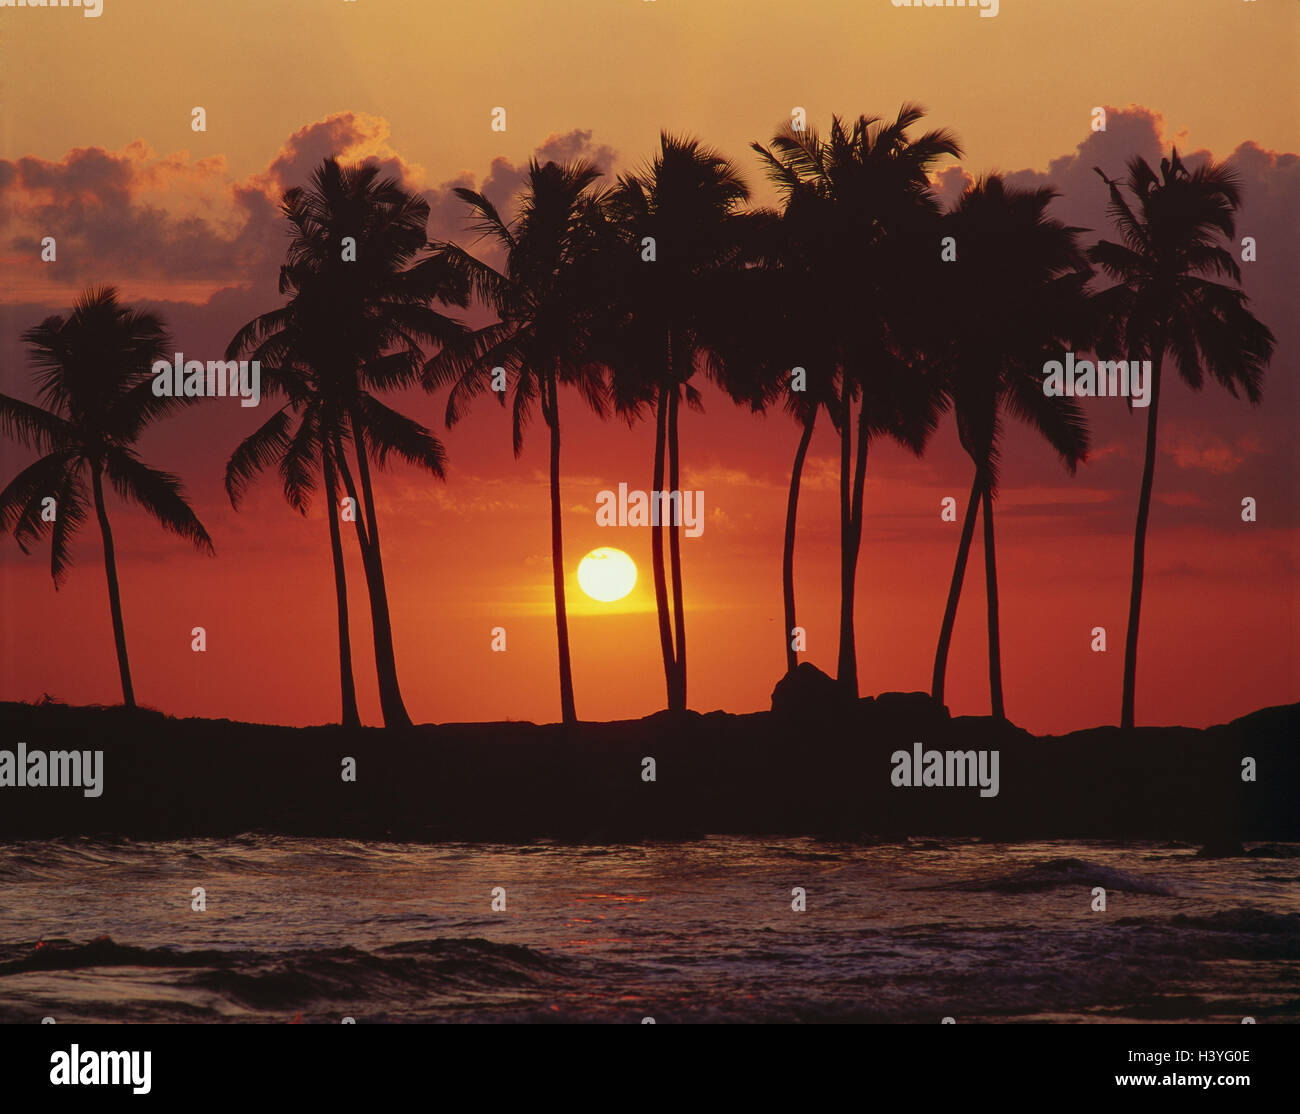 Le coucher du soleil, l'île, de palmiers, la mer, l'eau, plage, port, ciel nuageux, vacances, repos, à l'extérieur Banque D'Images